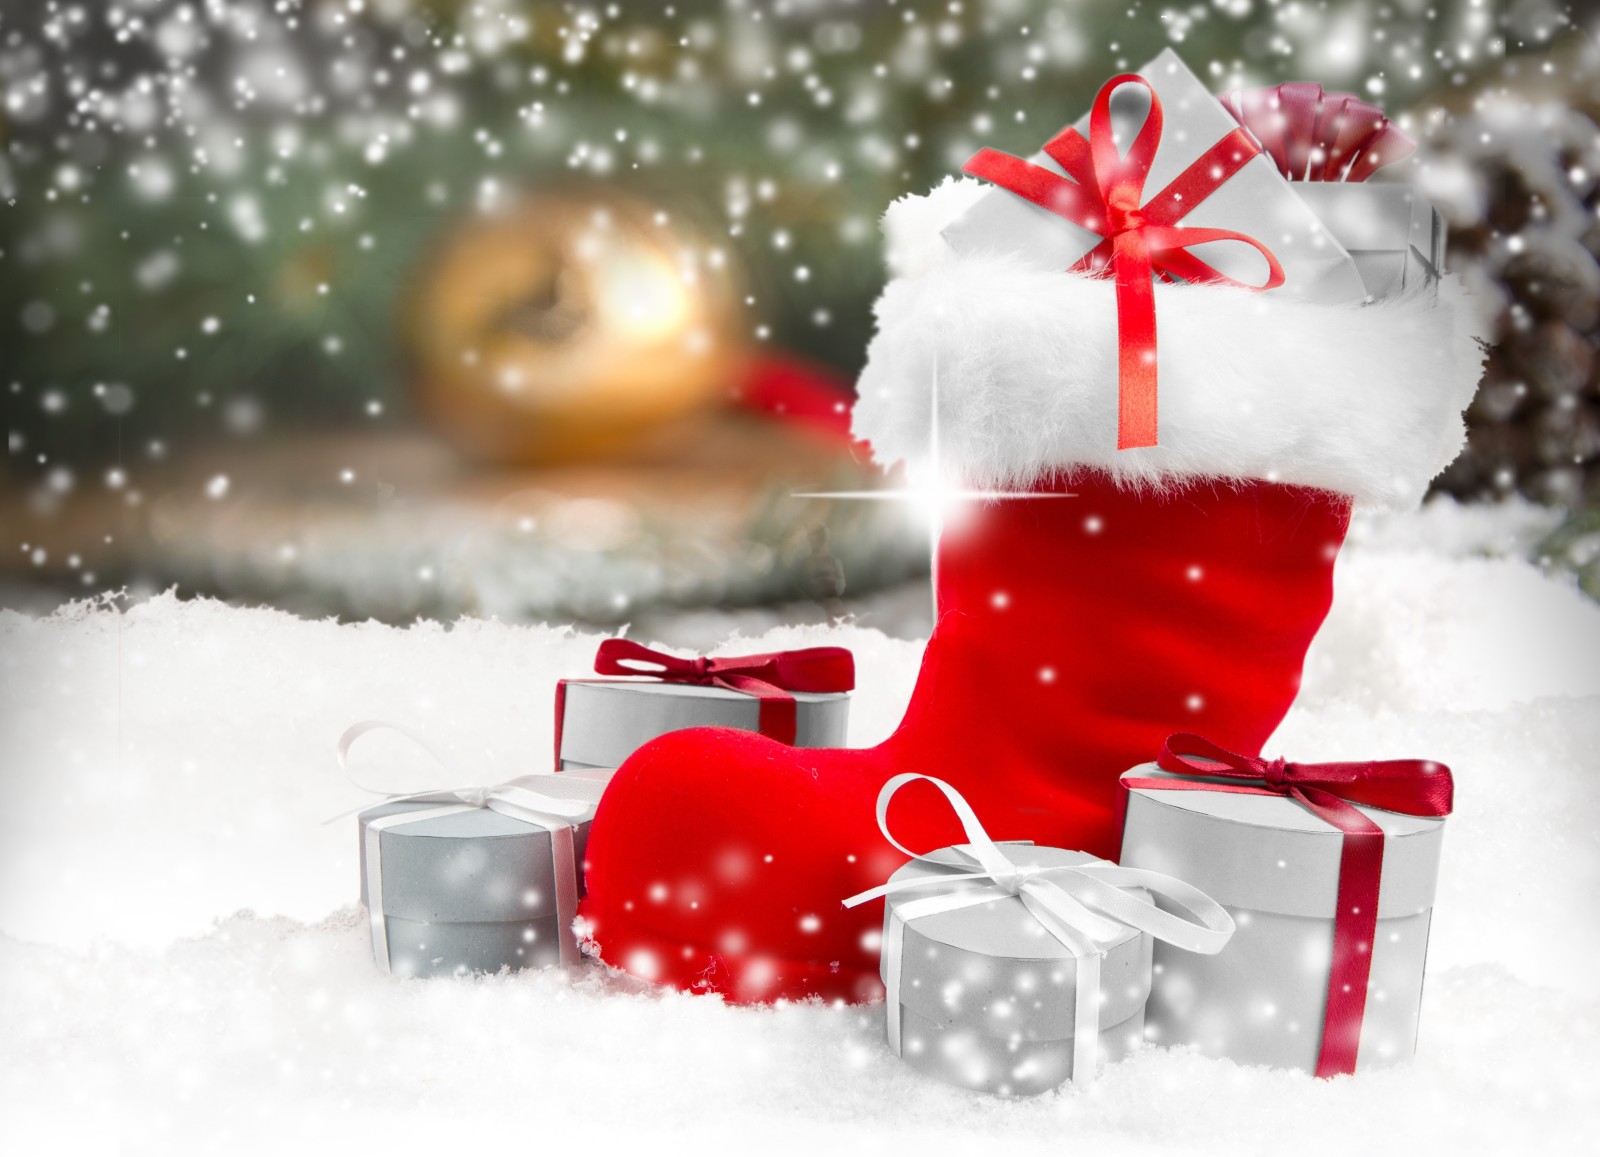 눈, 새해, 크리스마스, 장식, 명랑한, 겨울, 선물